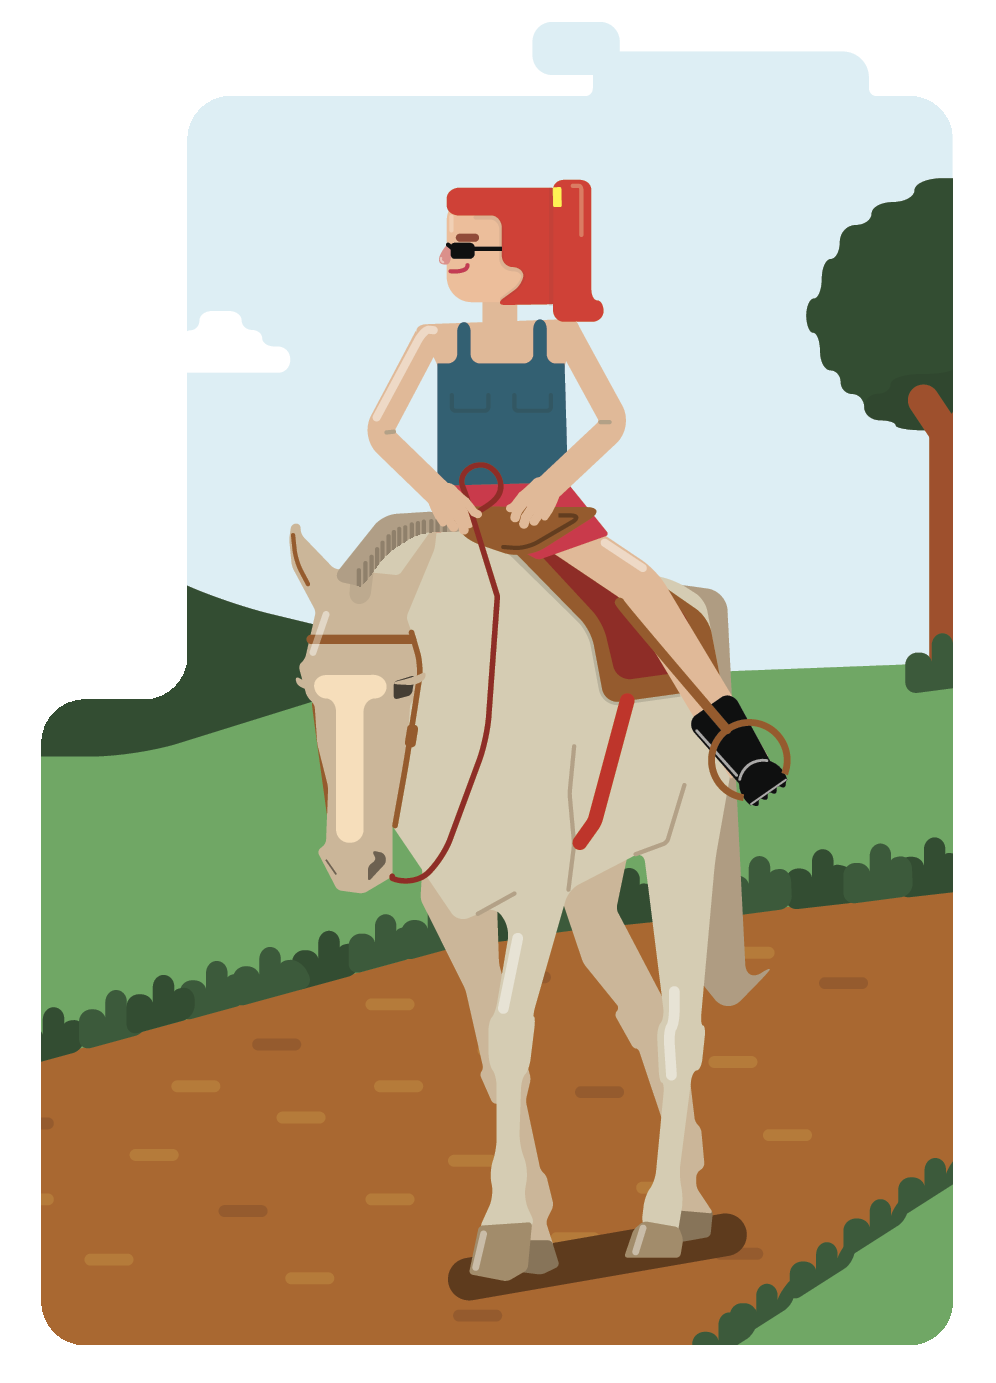 Ilustração. Uma mulher de cabelos presos e óculos escuros montada em um cavalo, passando por uma via de terra. Ao fundo há uma árvore.